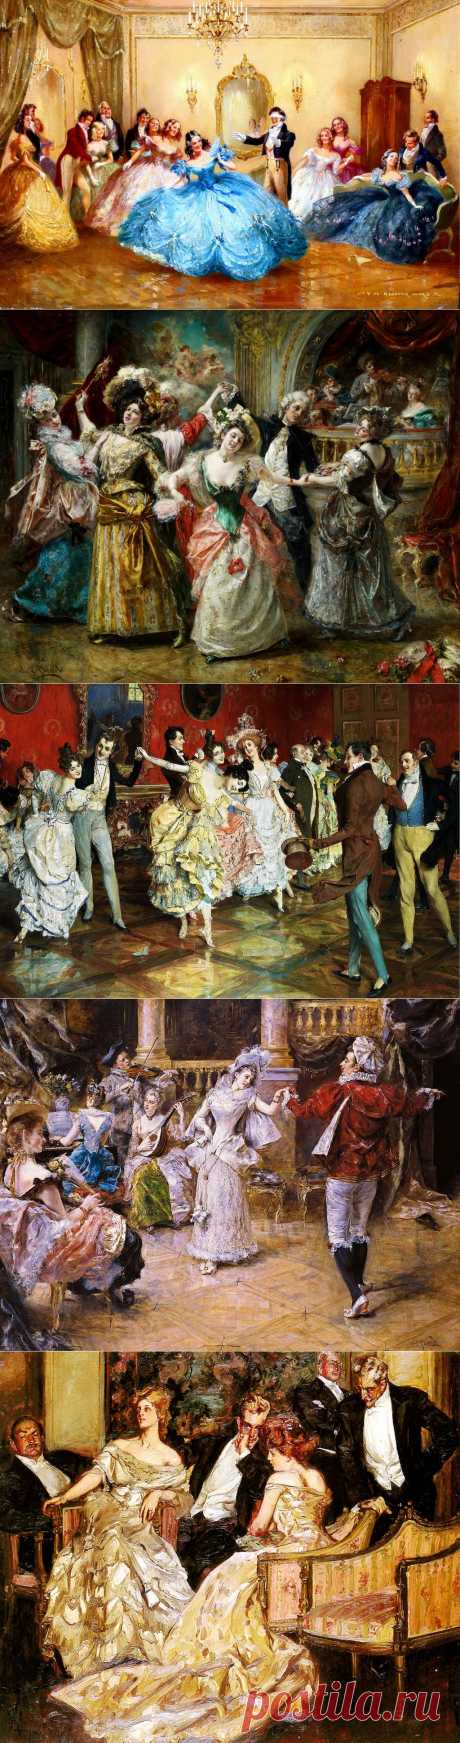 Великосветские развлечения и балы в живописи художников 19-20 веков.